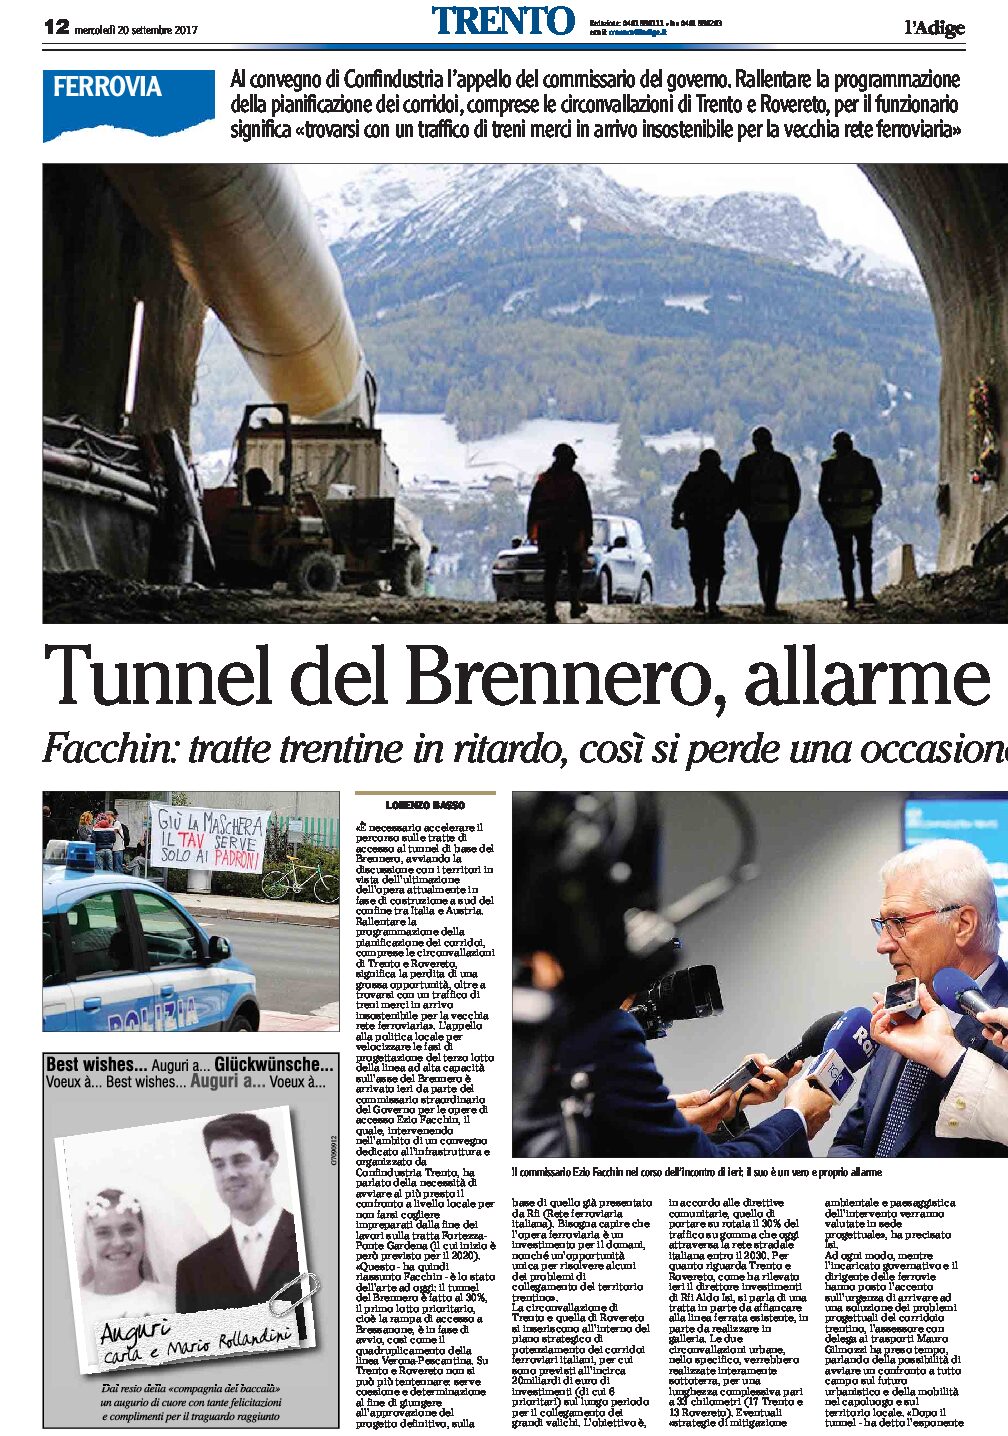 Mobilità trentina: Tunnel del Brennero, Valdastico, ferrovia Trento-Canazei